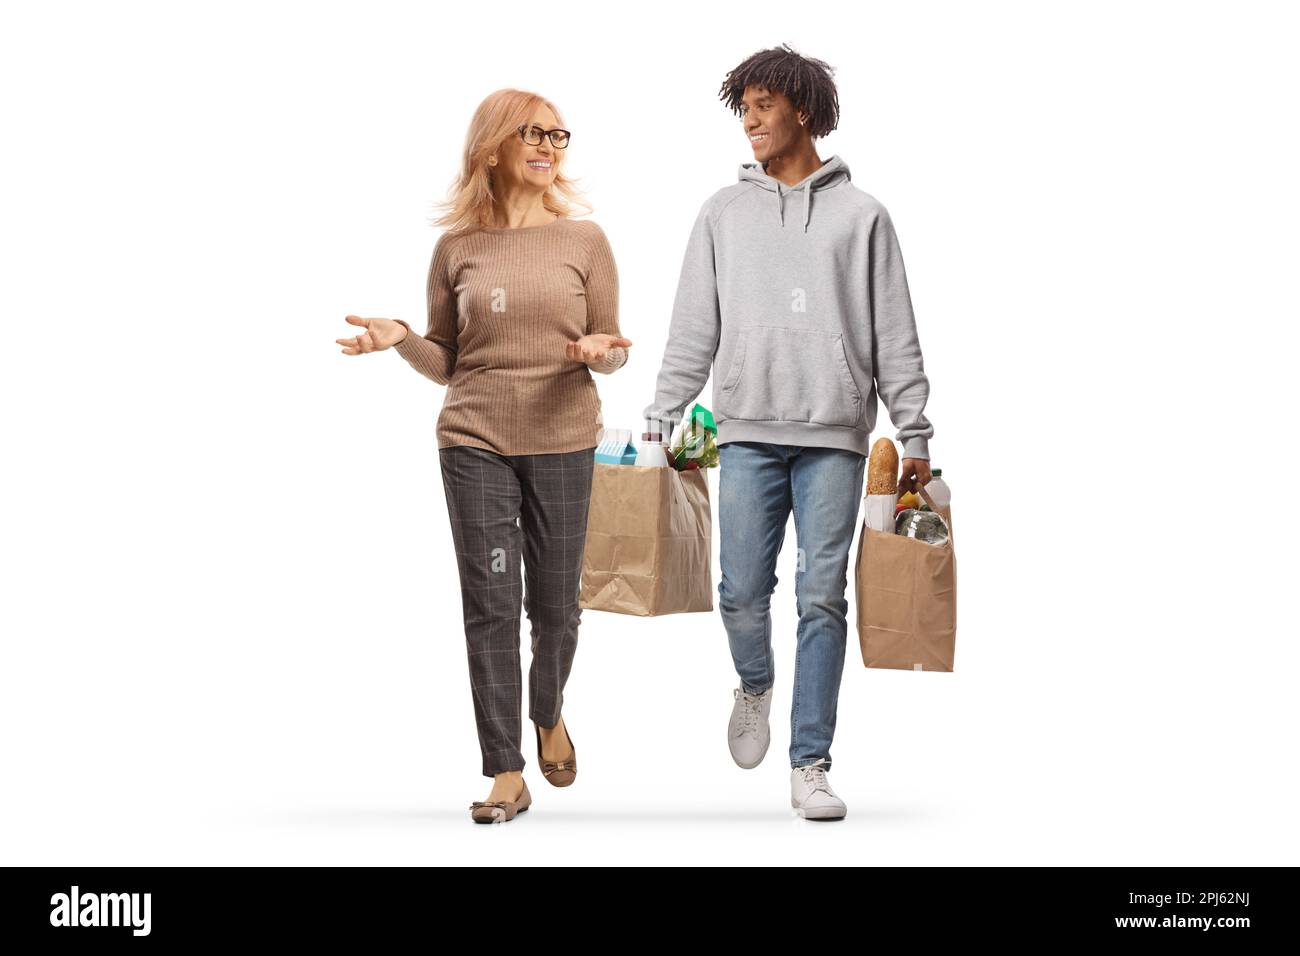 Porträt einer Kaukasierin, die mit einem jungen afroamerikanischen Mann läuft und spricht, mit Einkaufstaschen isoliert auf weißem Hintergrund Stockfoto